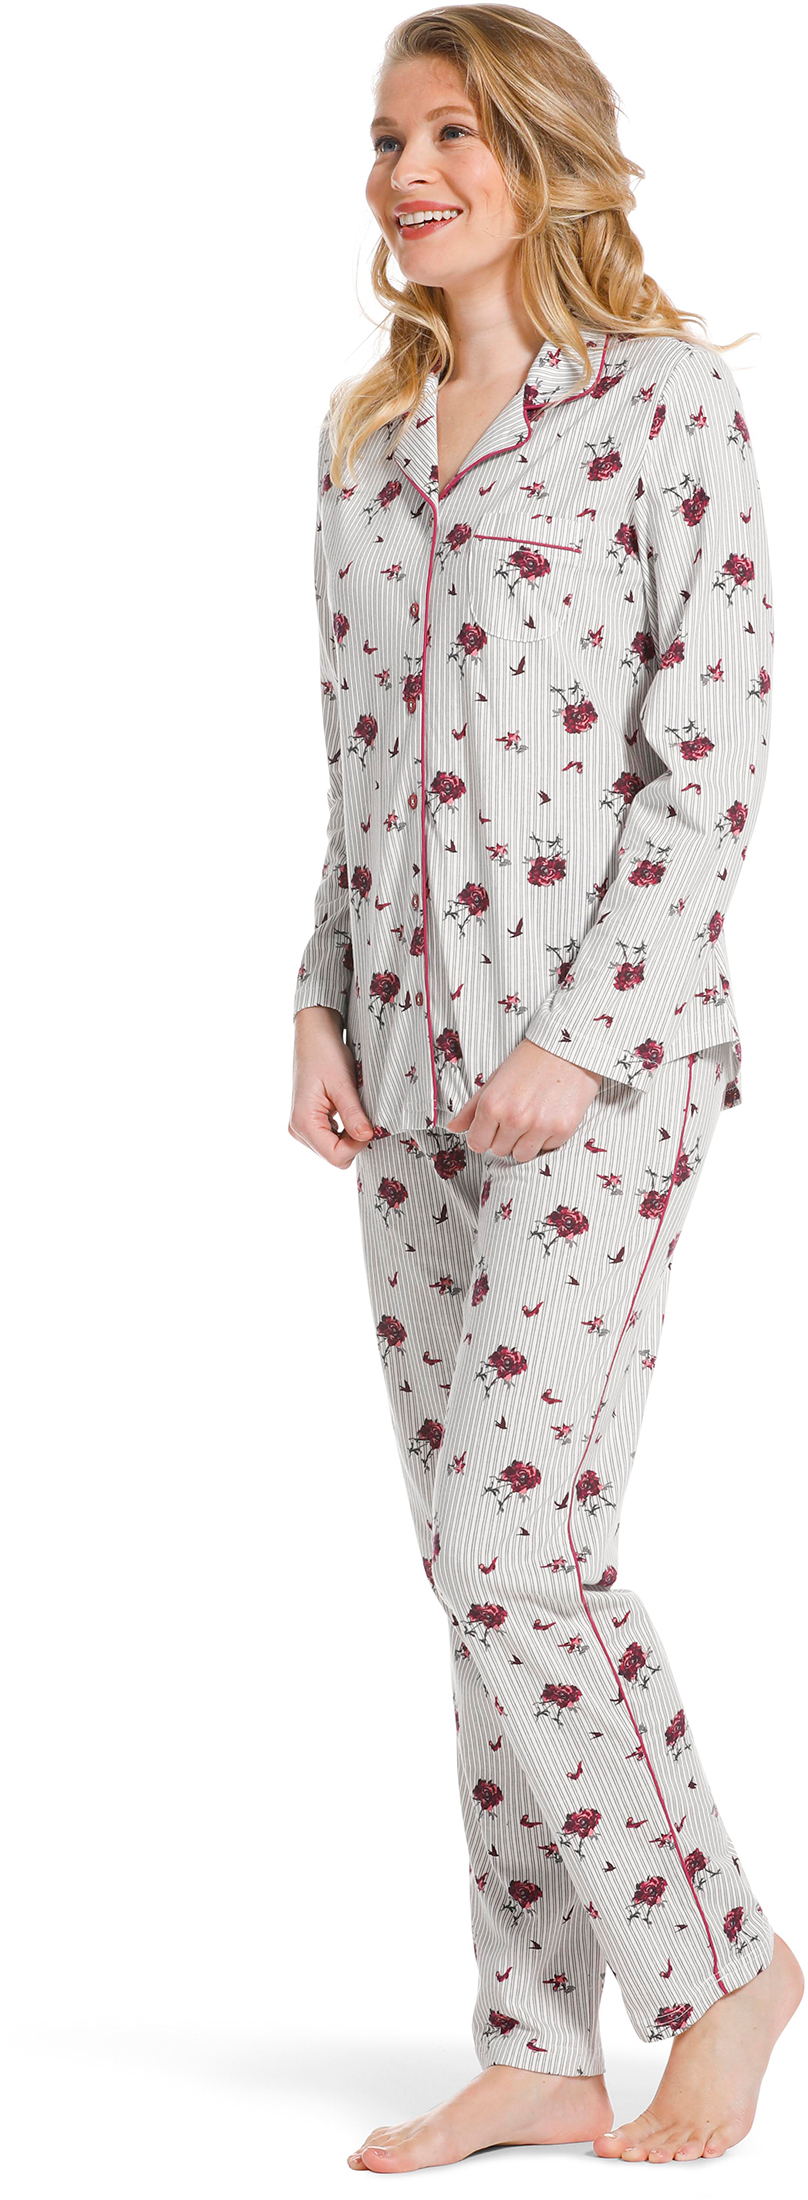 Pastunette doorknoop dames pyjama 20222-156-6-44